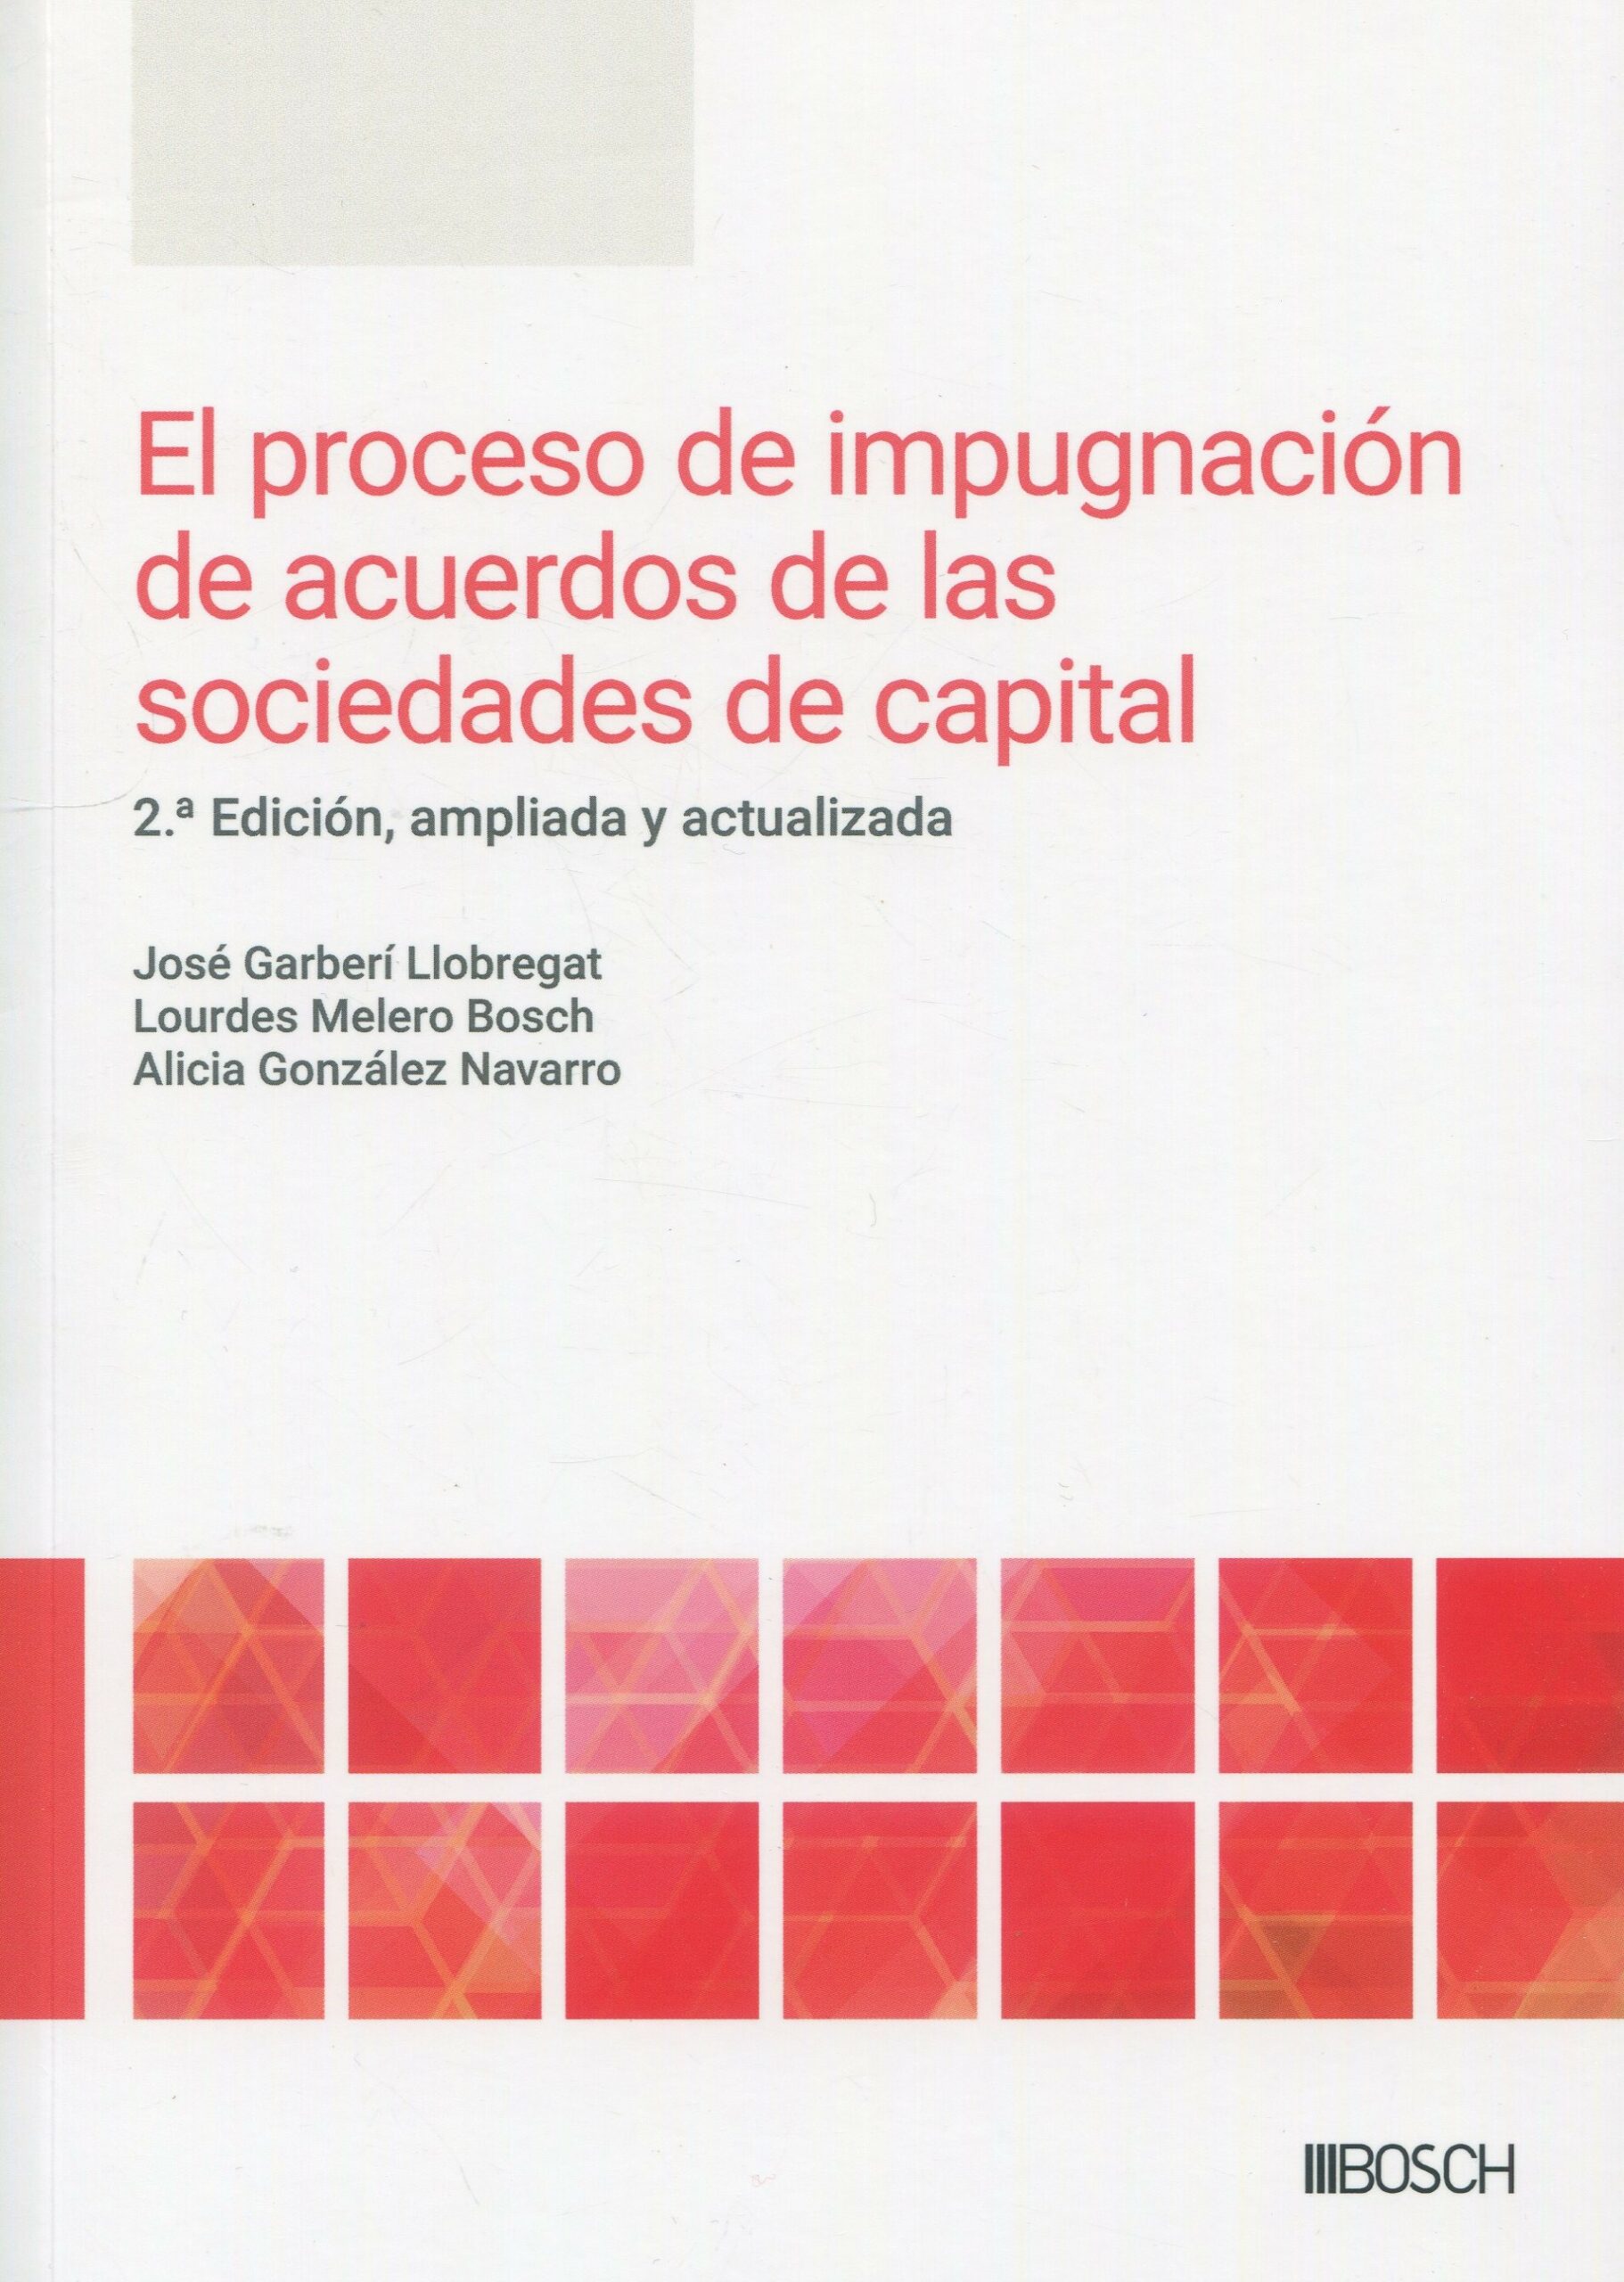 El proceso de impugnación de acuerdos de las sociedades de capital